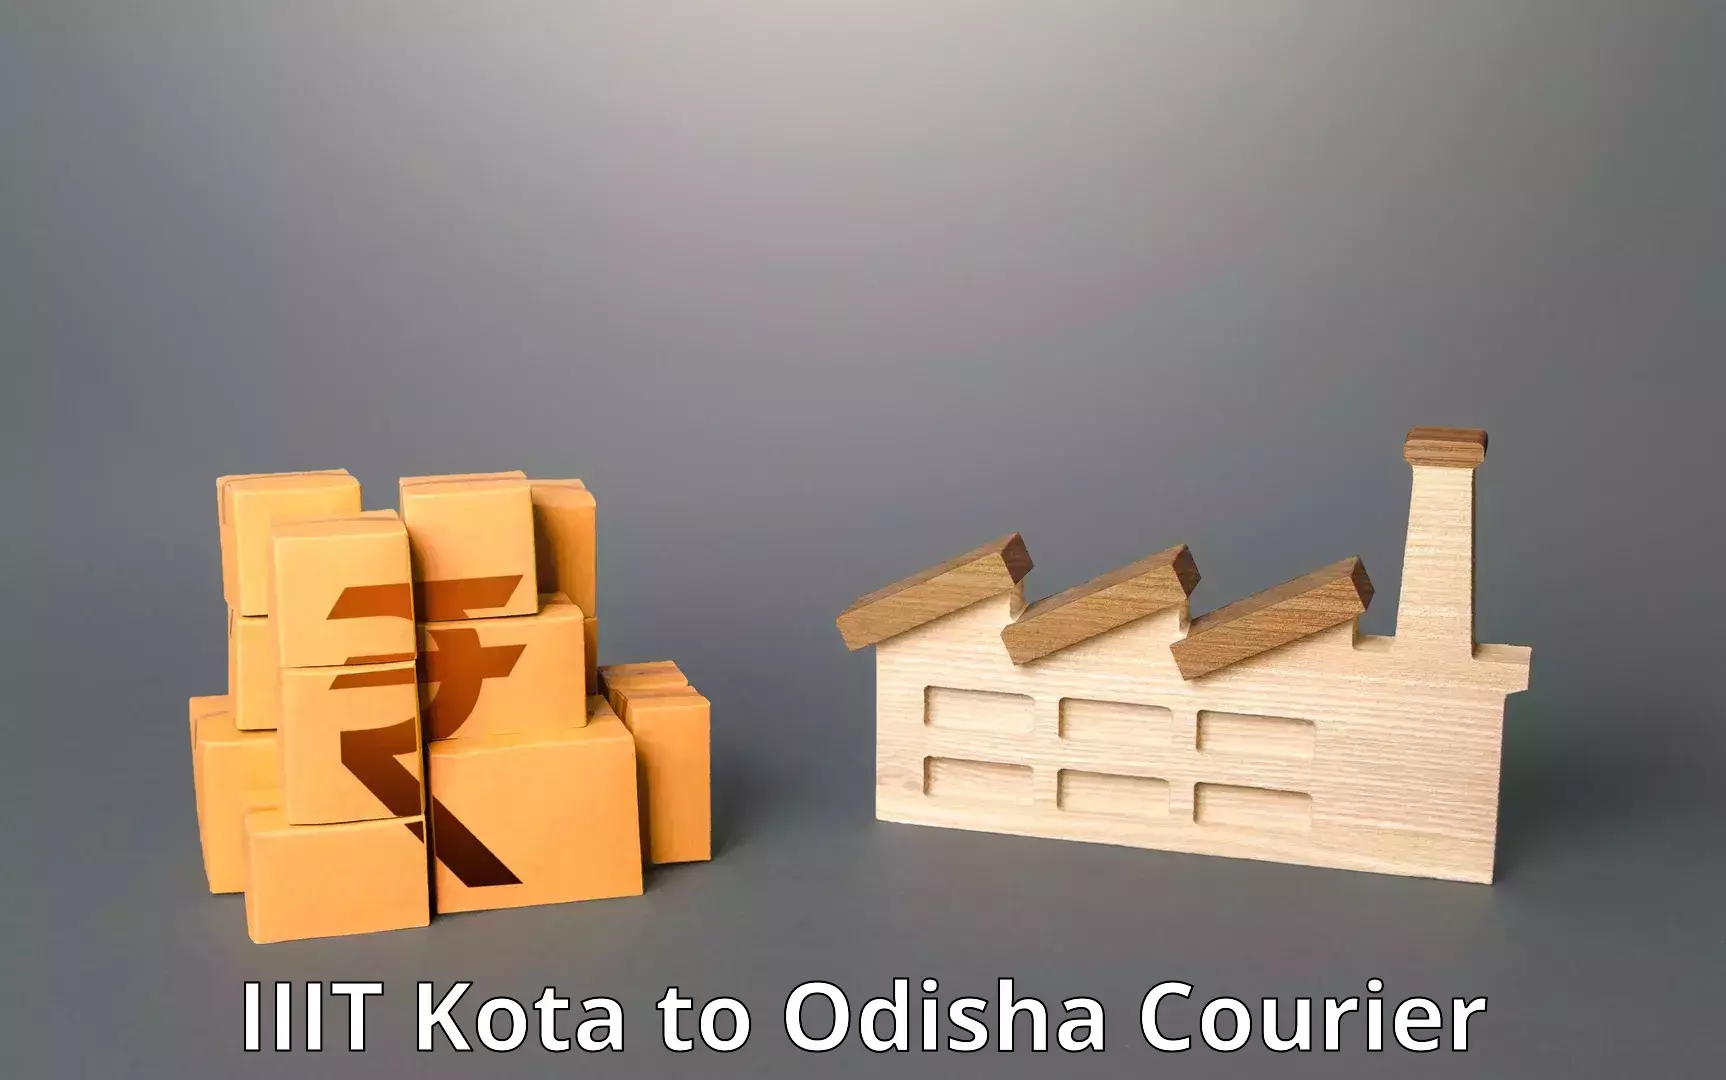 24-hour courier service IIIT Kota to Odisha